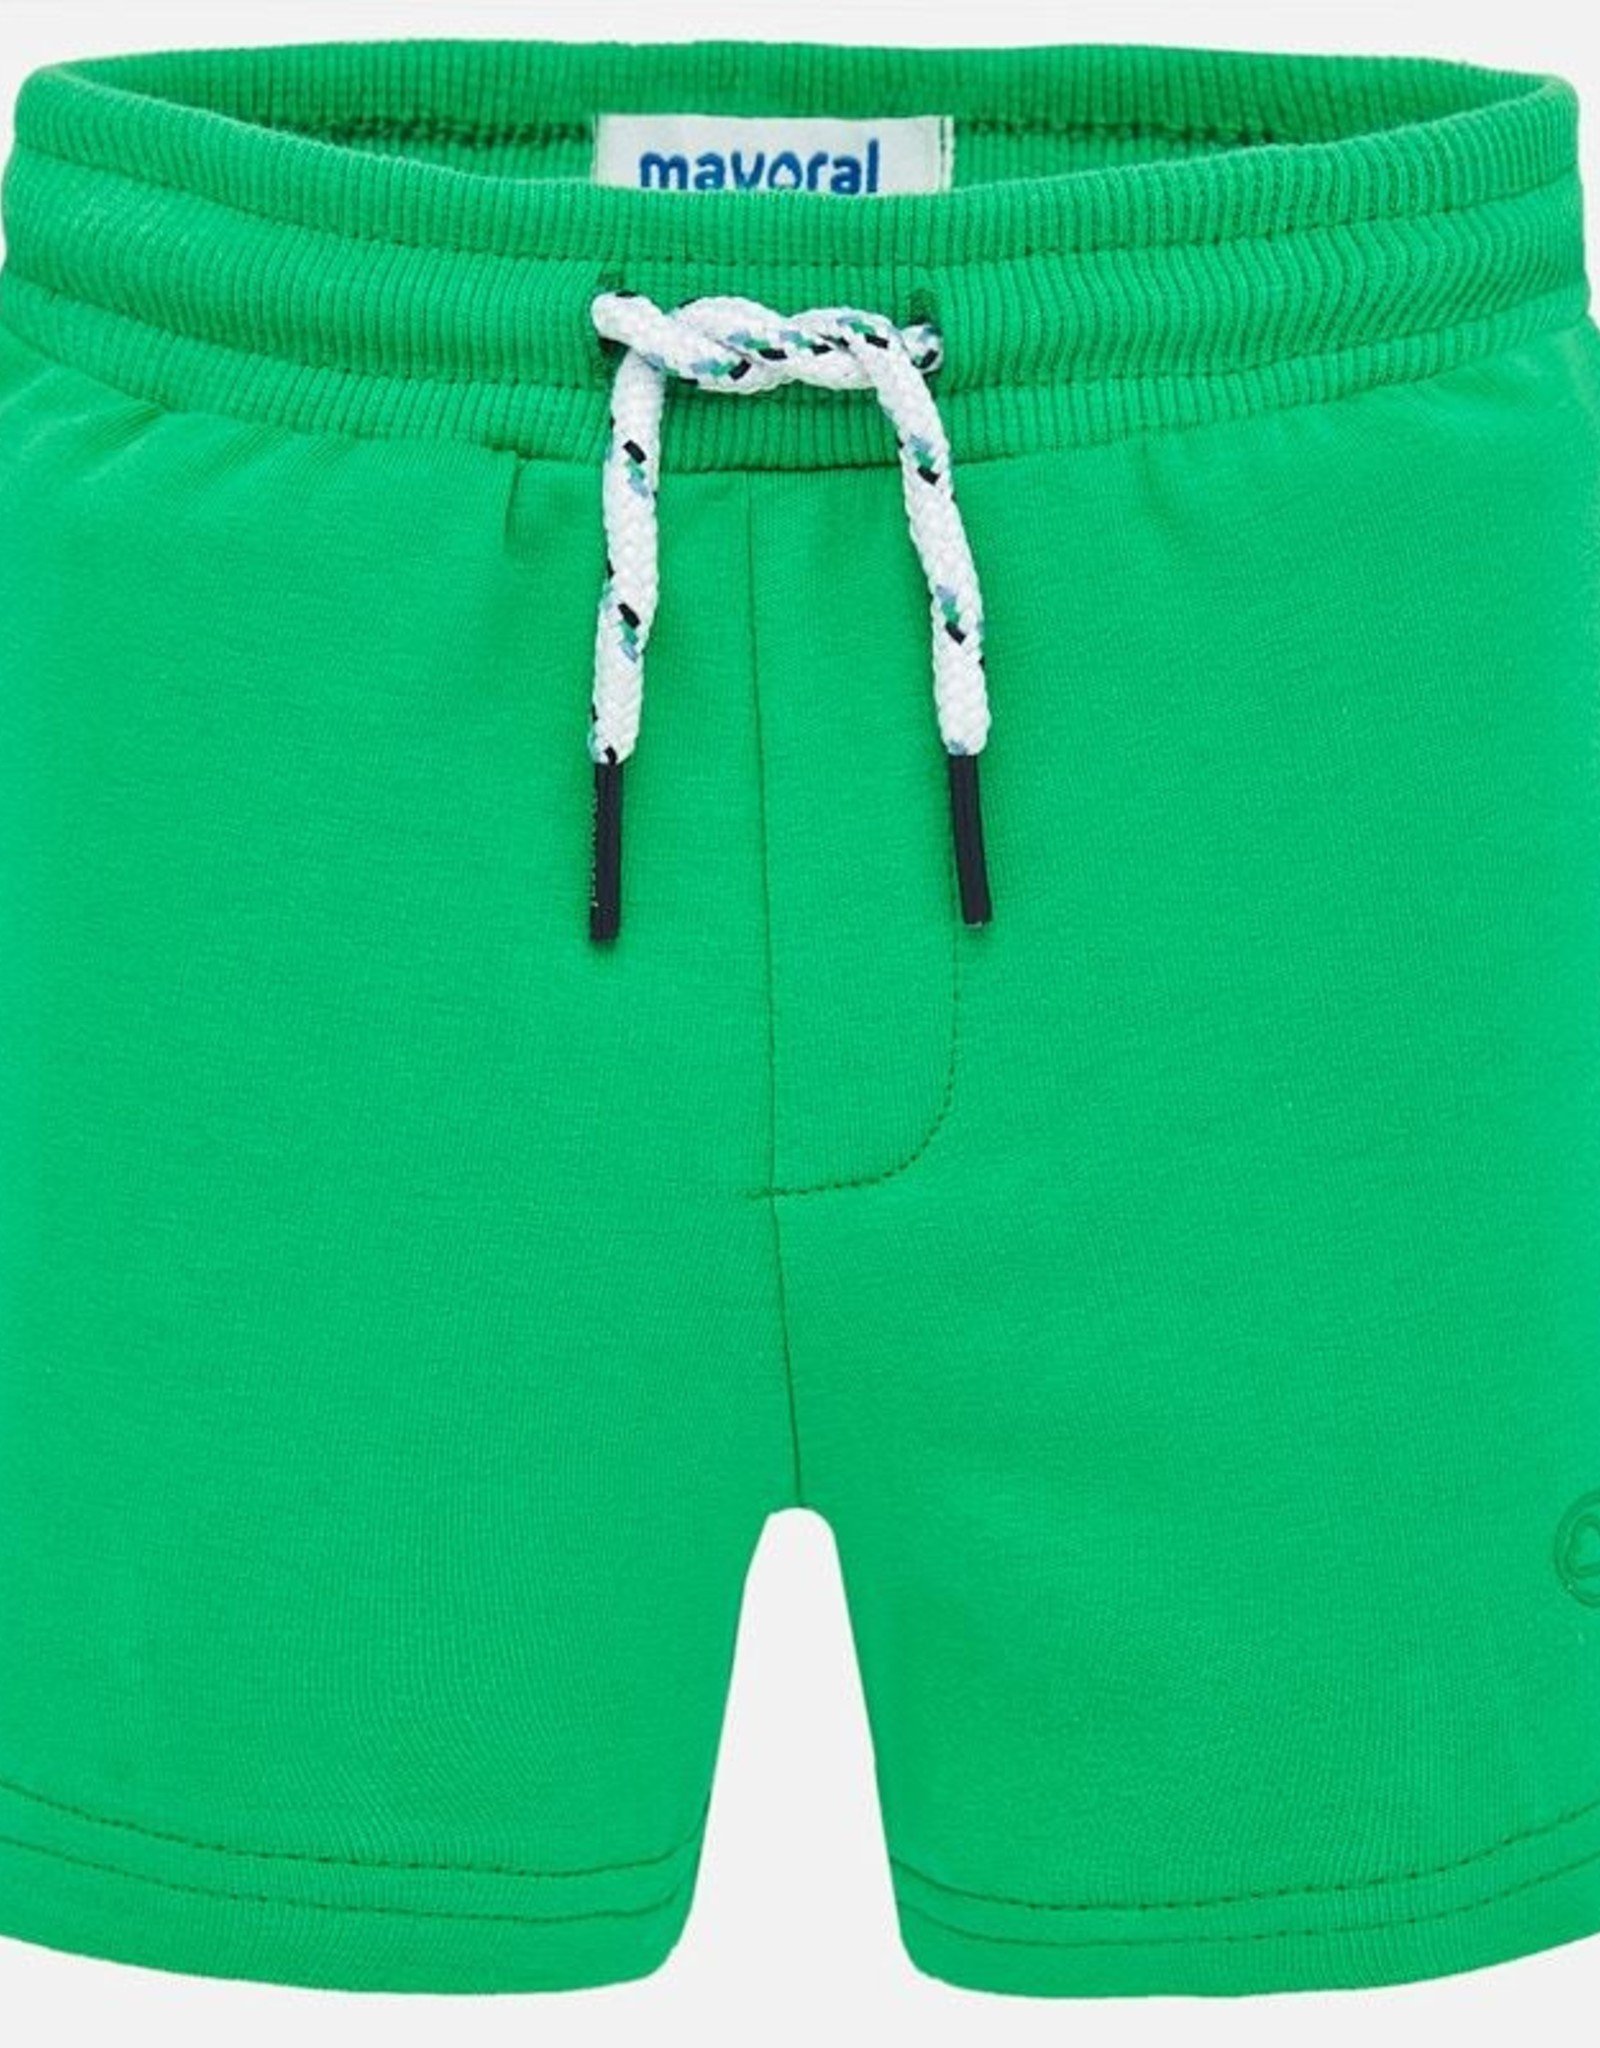 Mayoral fleece shorts - Grey or Green